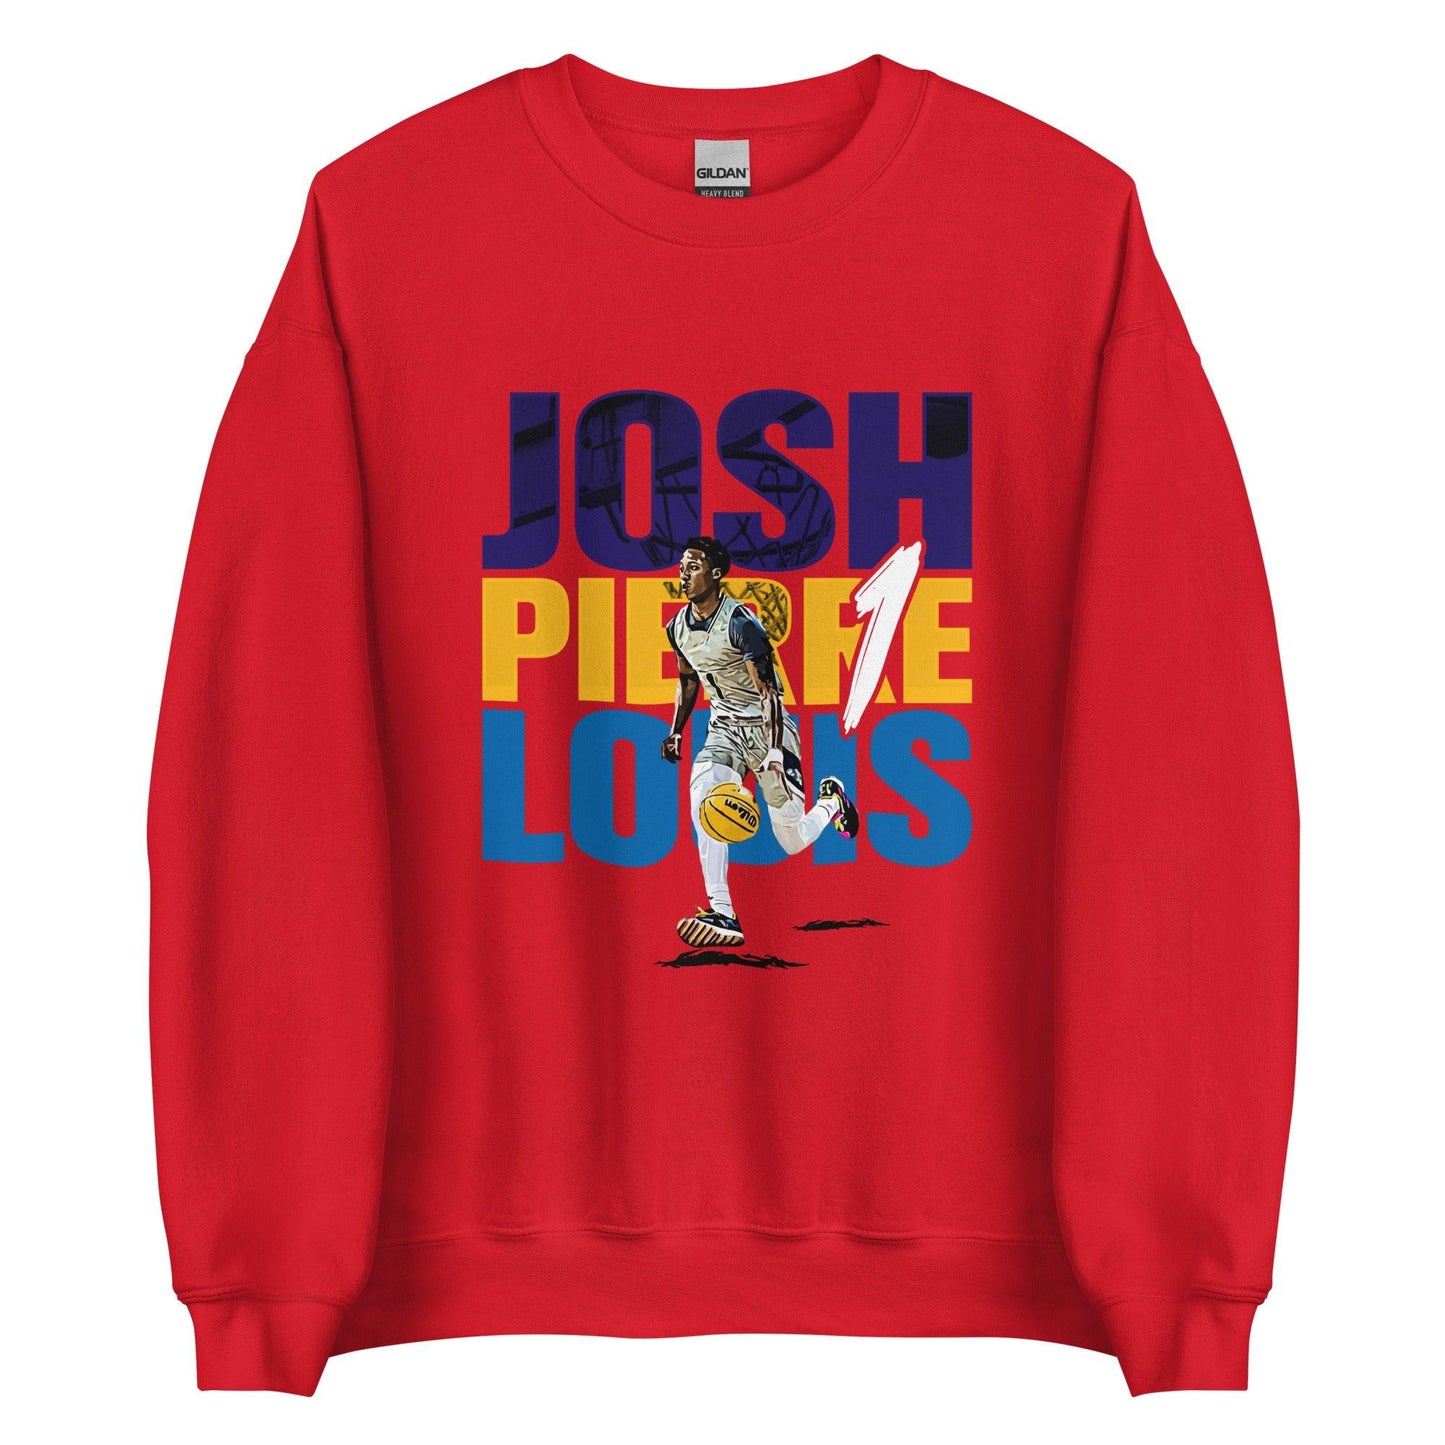 Josh Pierre-Louis "Gameday" Sweatshirt - Fan Arch